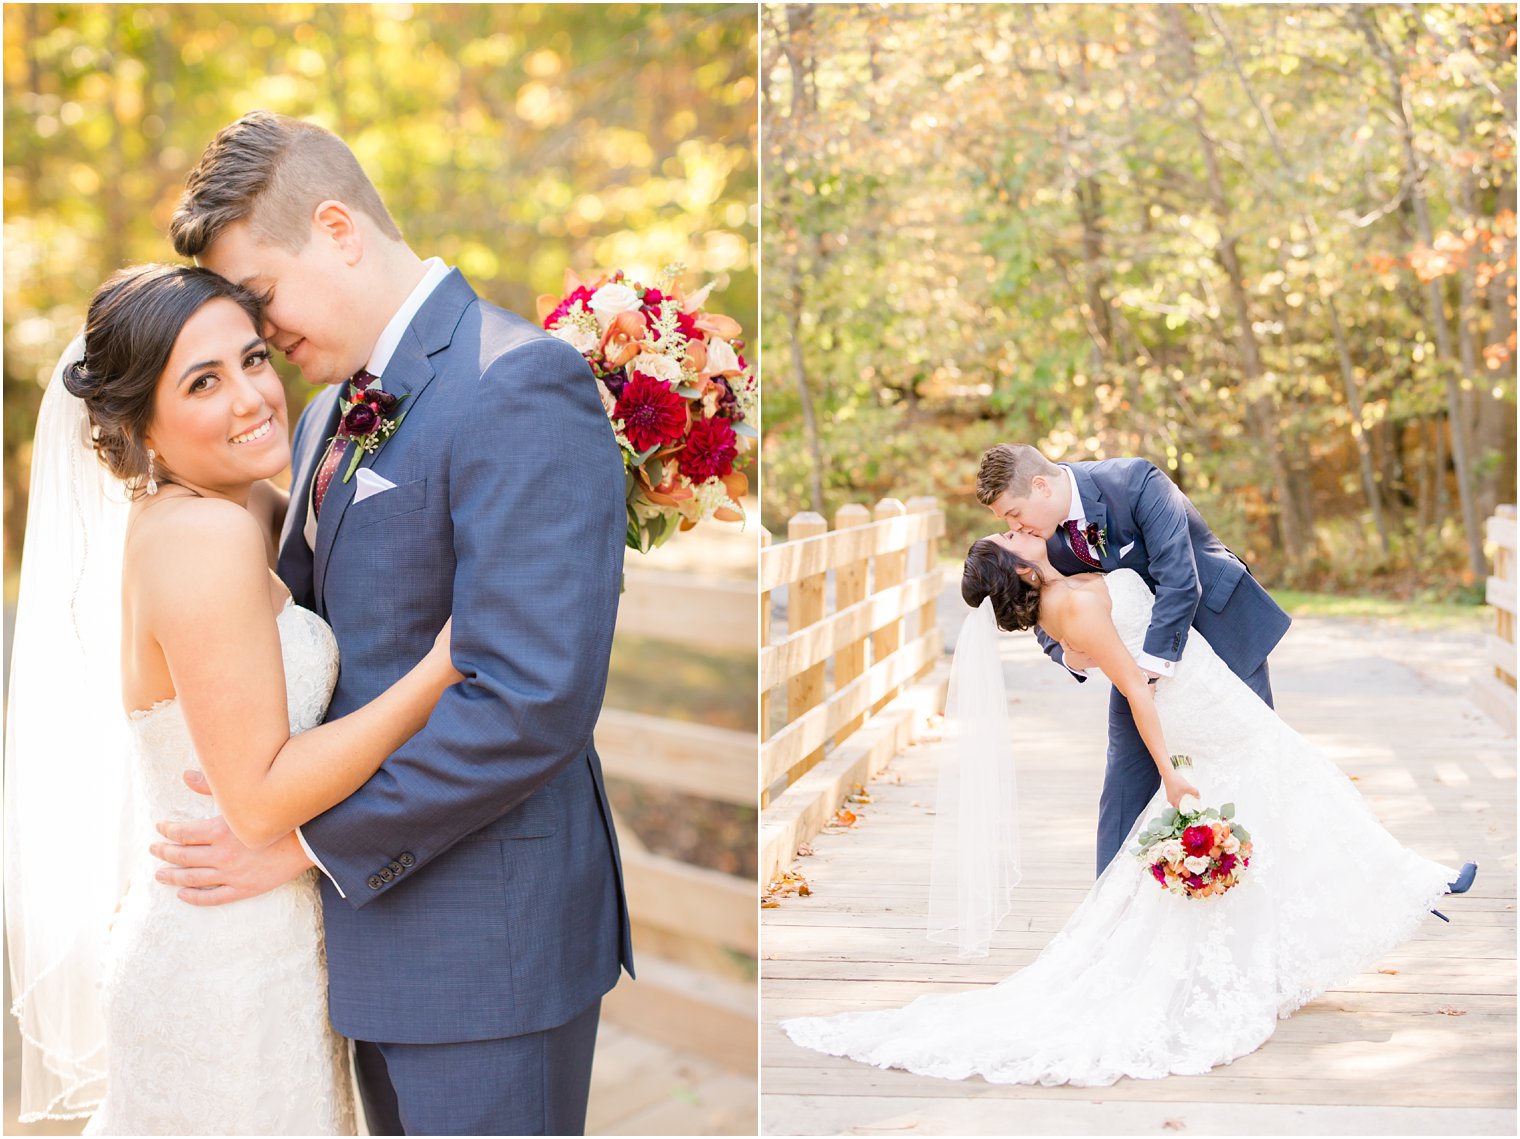 Posing ideas for bride and groom photos | Photos by NJ Wedding Photographers Idalia Photography